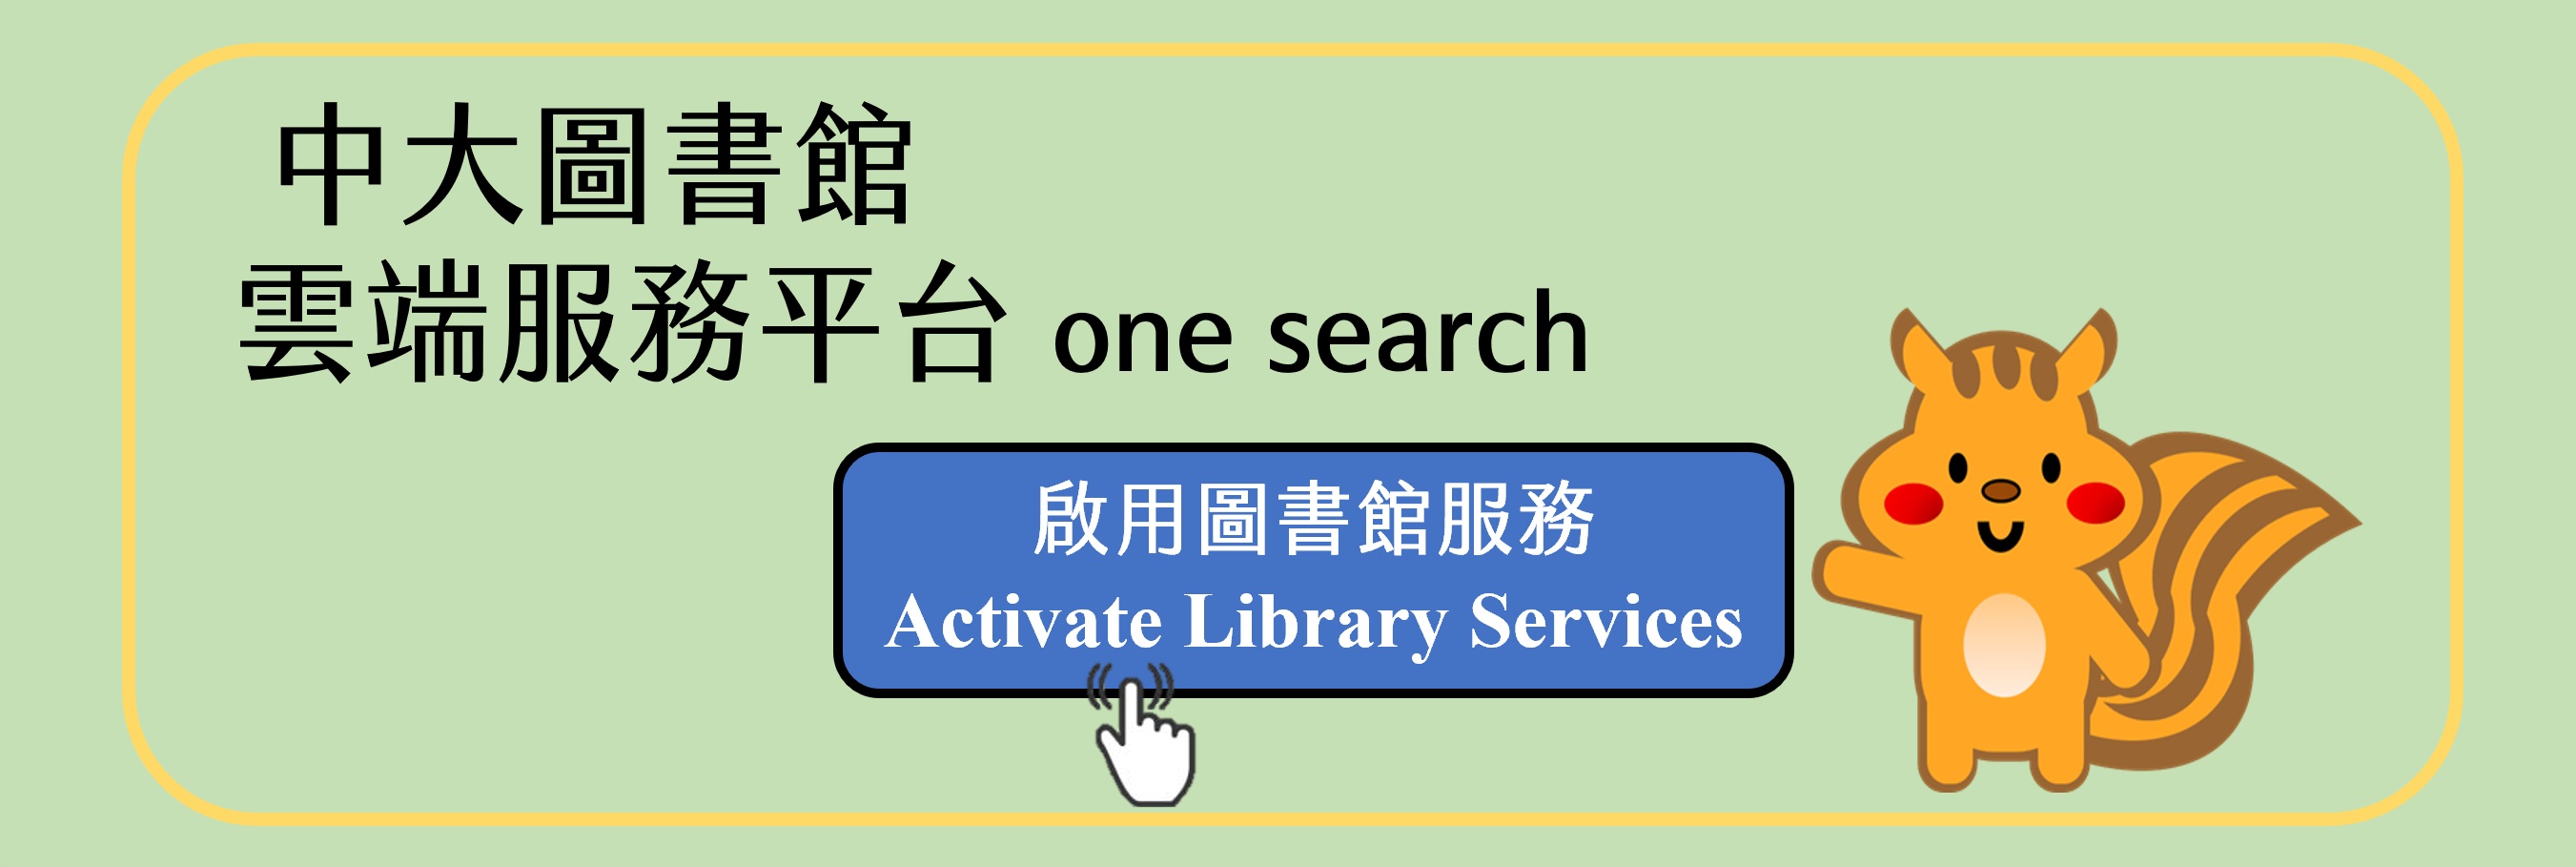 中大圖書館雲端服務平台